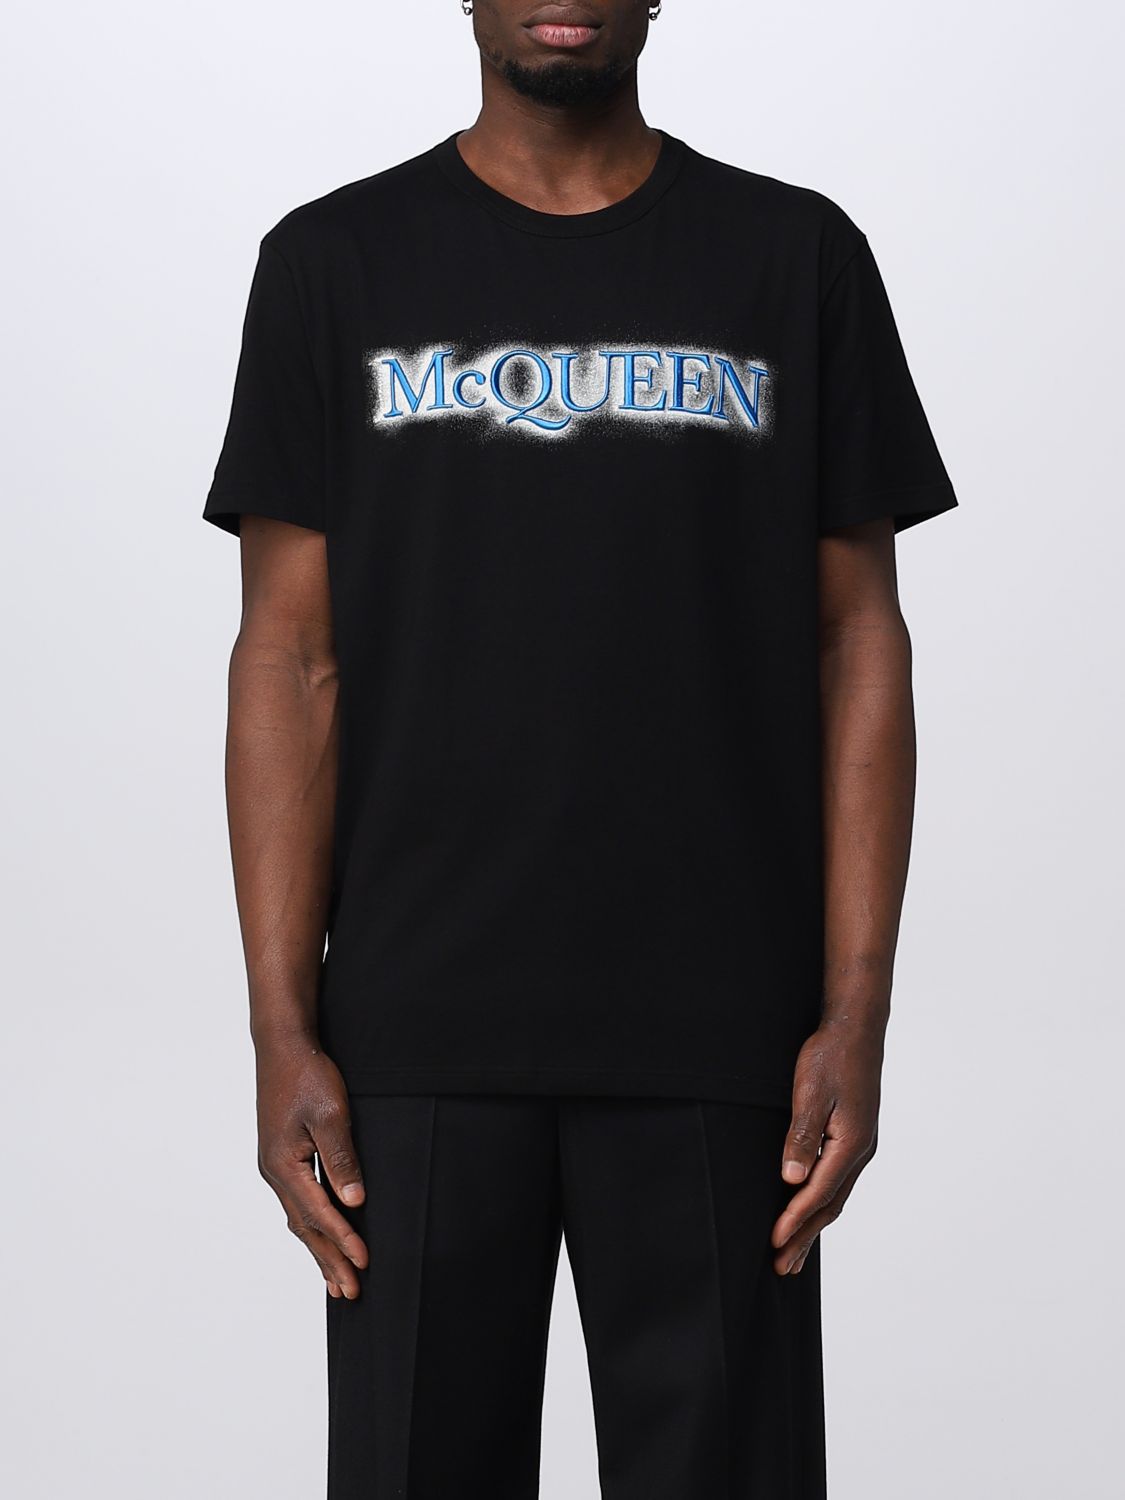 ALEXANDER MCQUEEN: t-shirt for man - Black | Alexander Mcqueen t-shirt ...